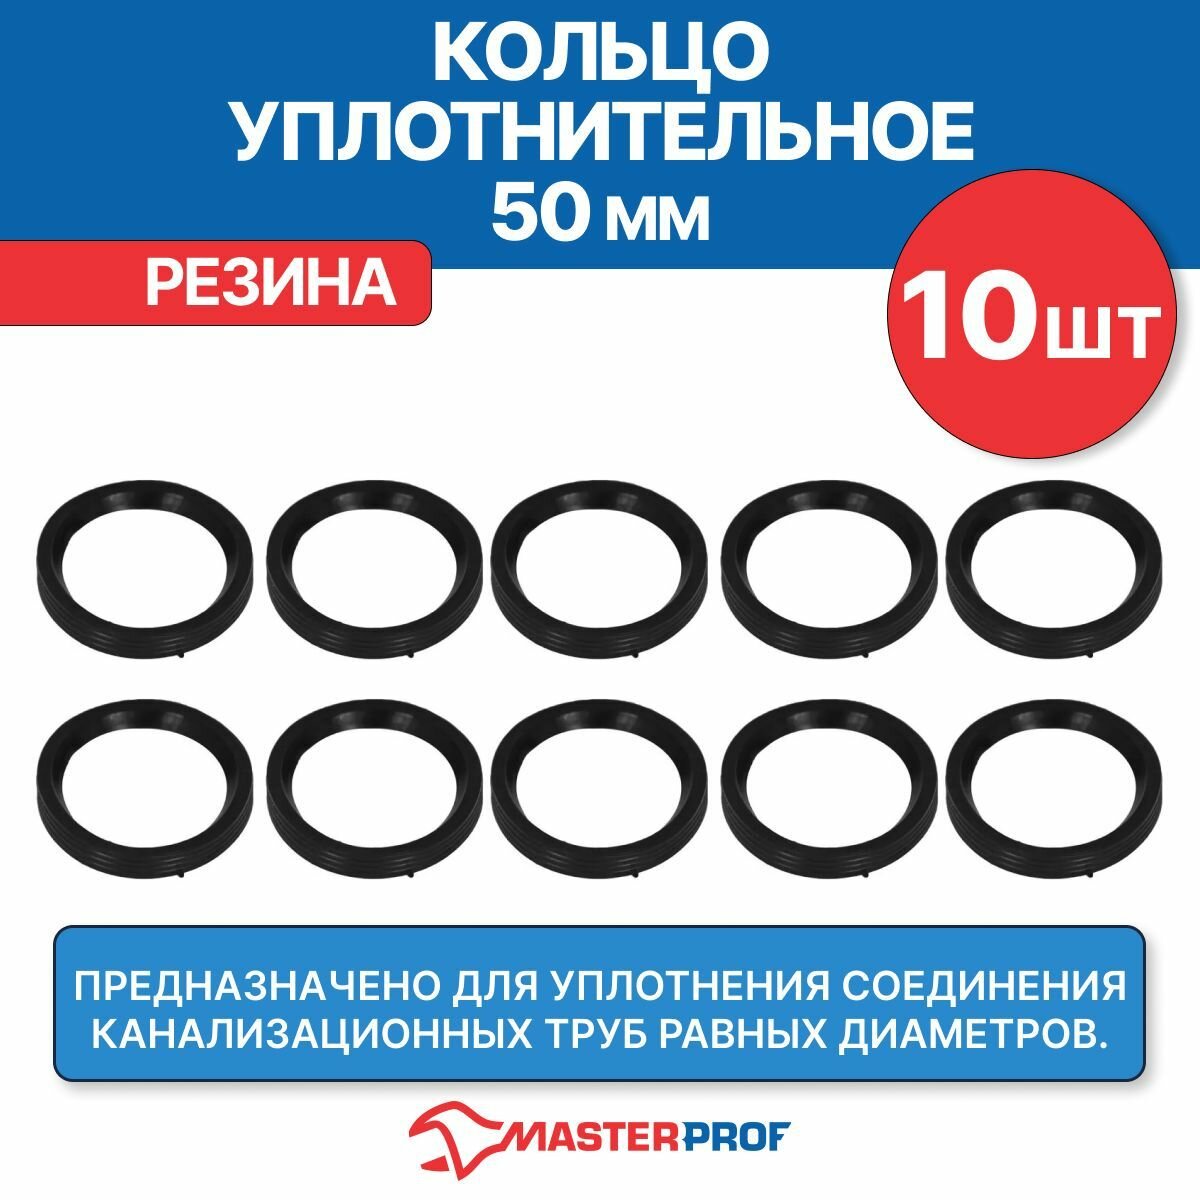 Кольцо уплотнительное канализационное 50 мм (10 шт.)